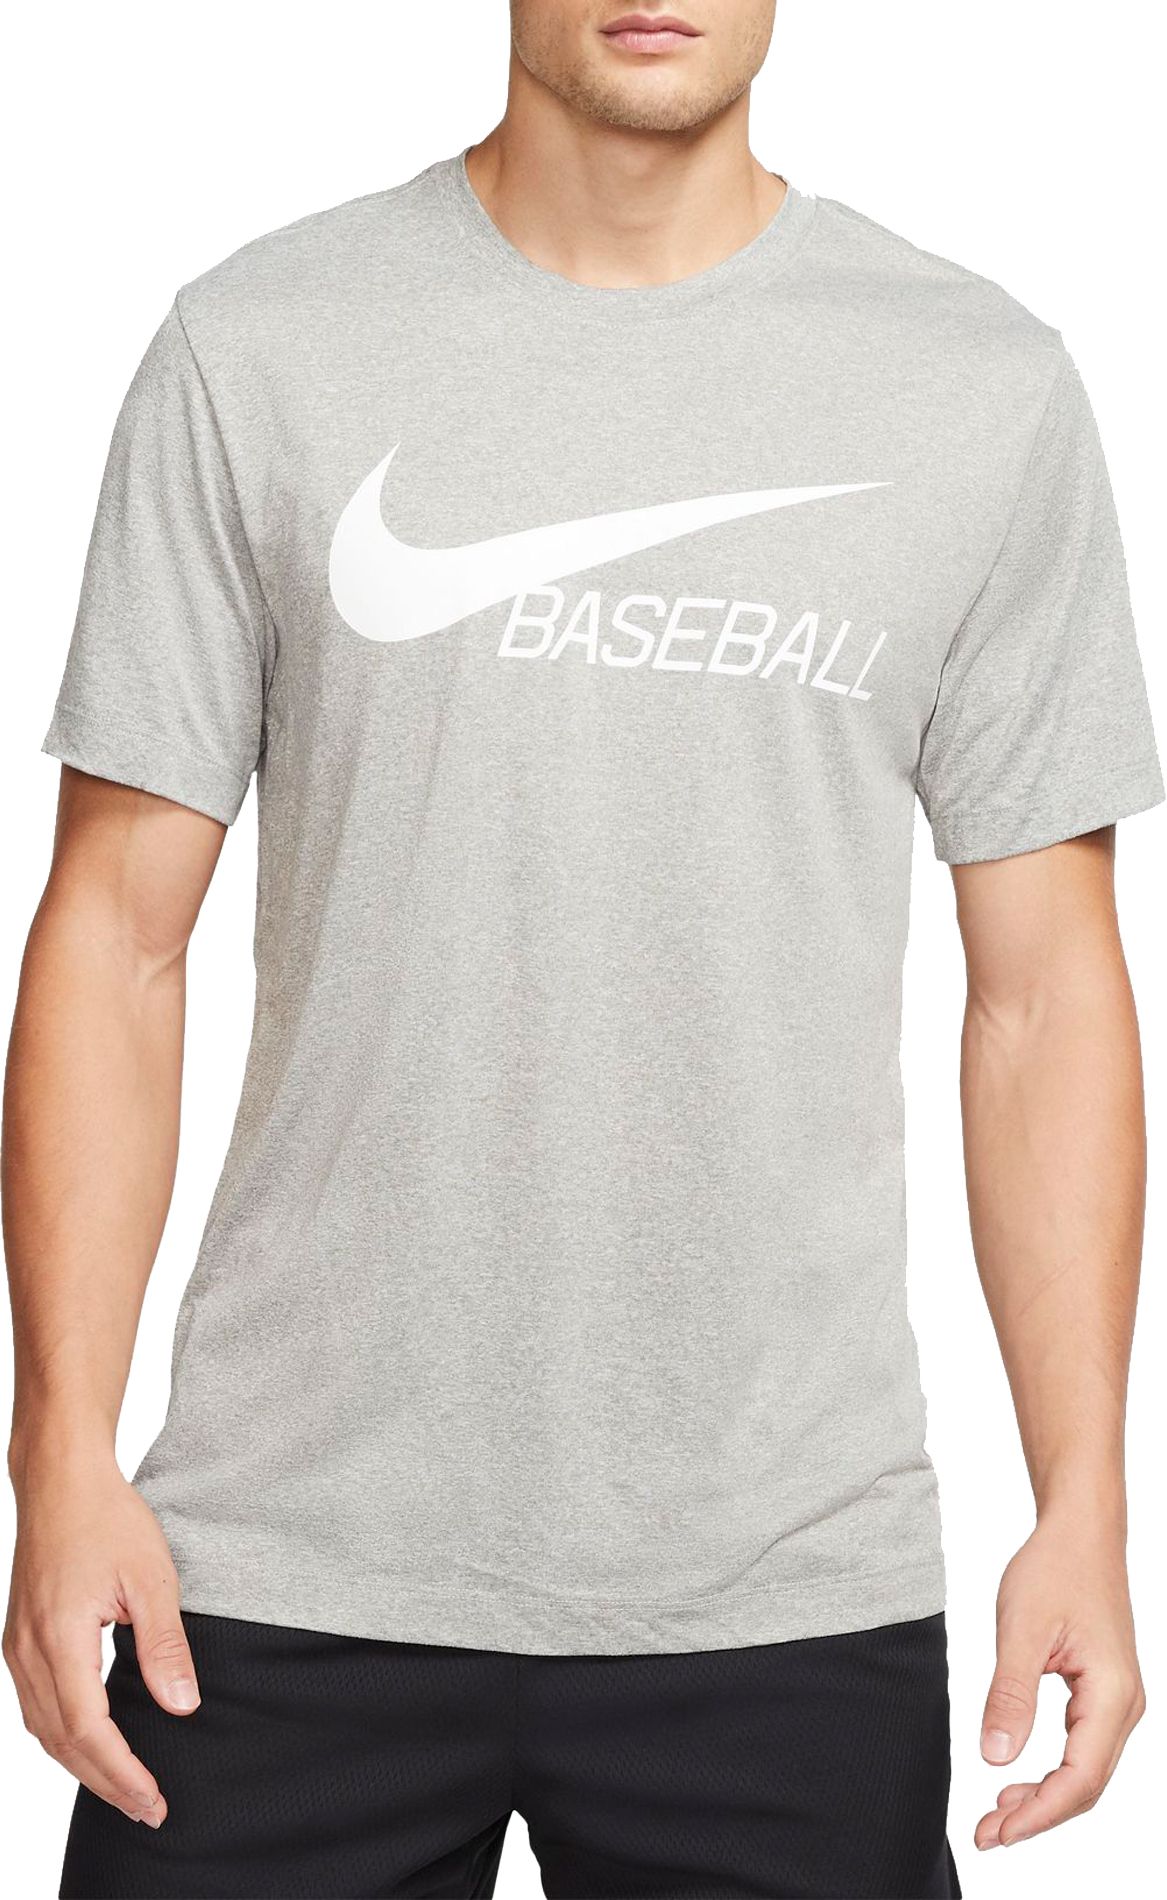 Nike Dri-Fit Men's Baseball T-Shirt